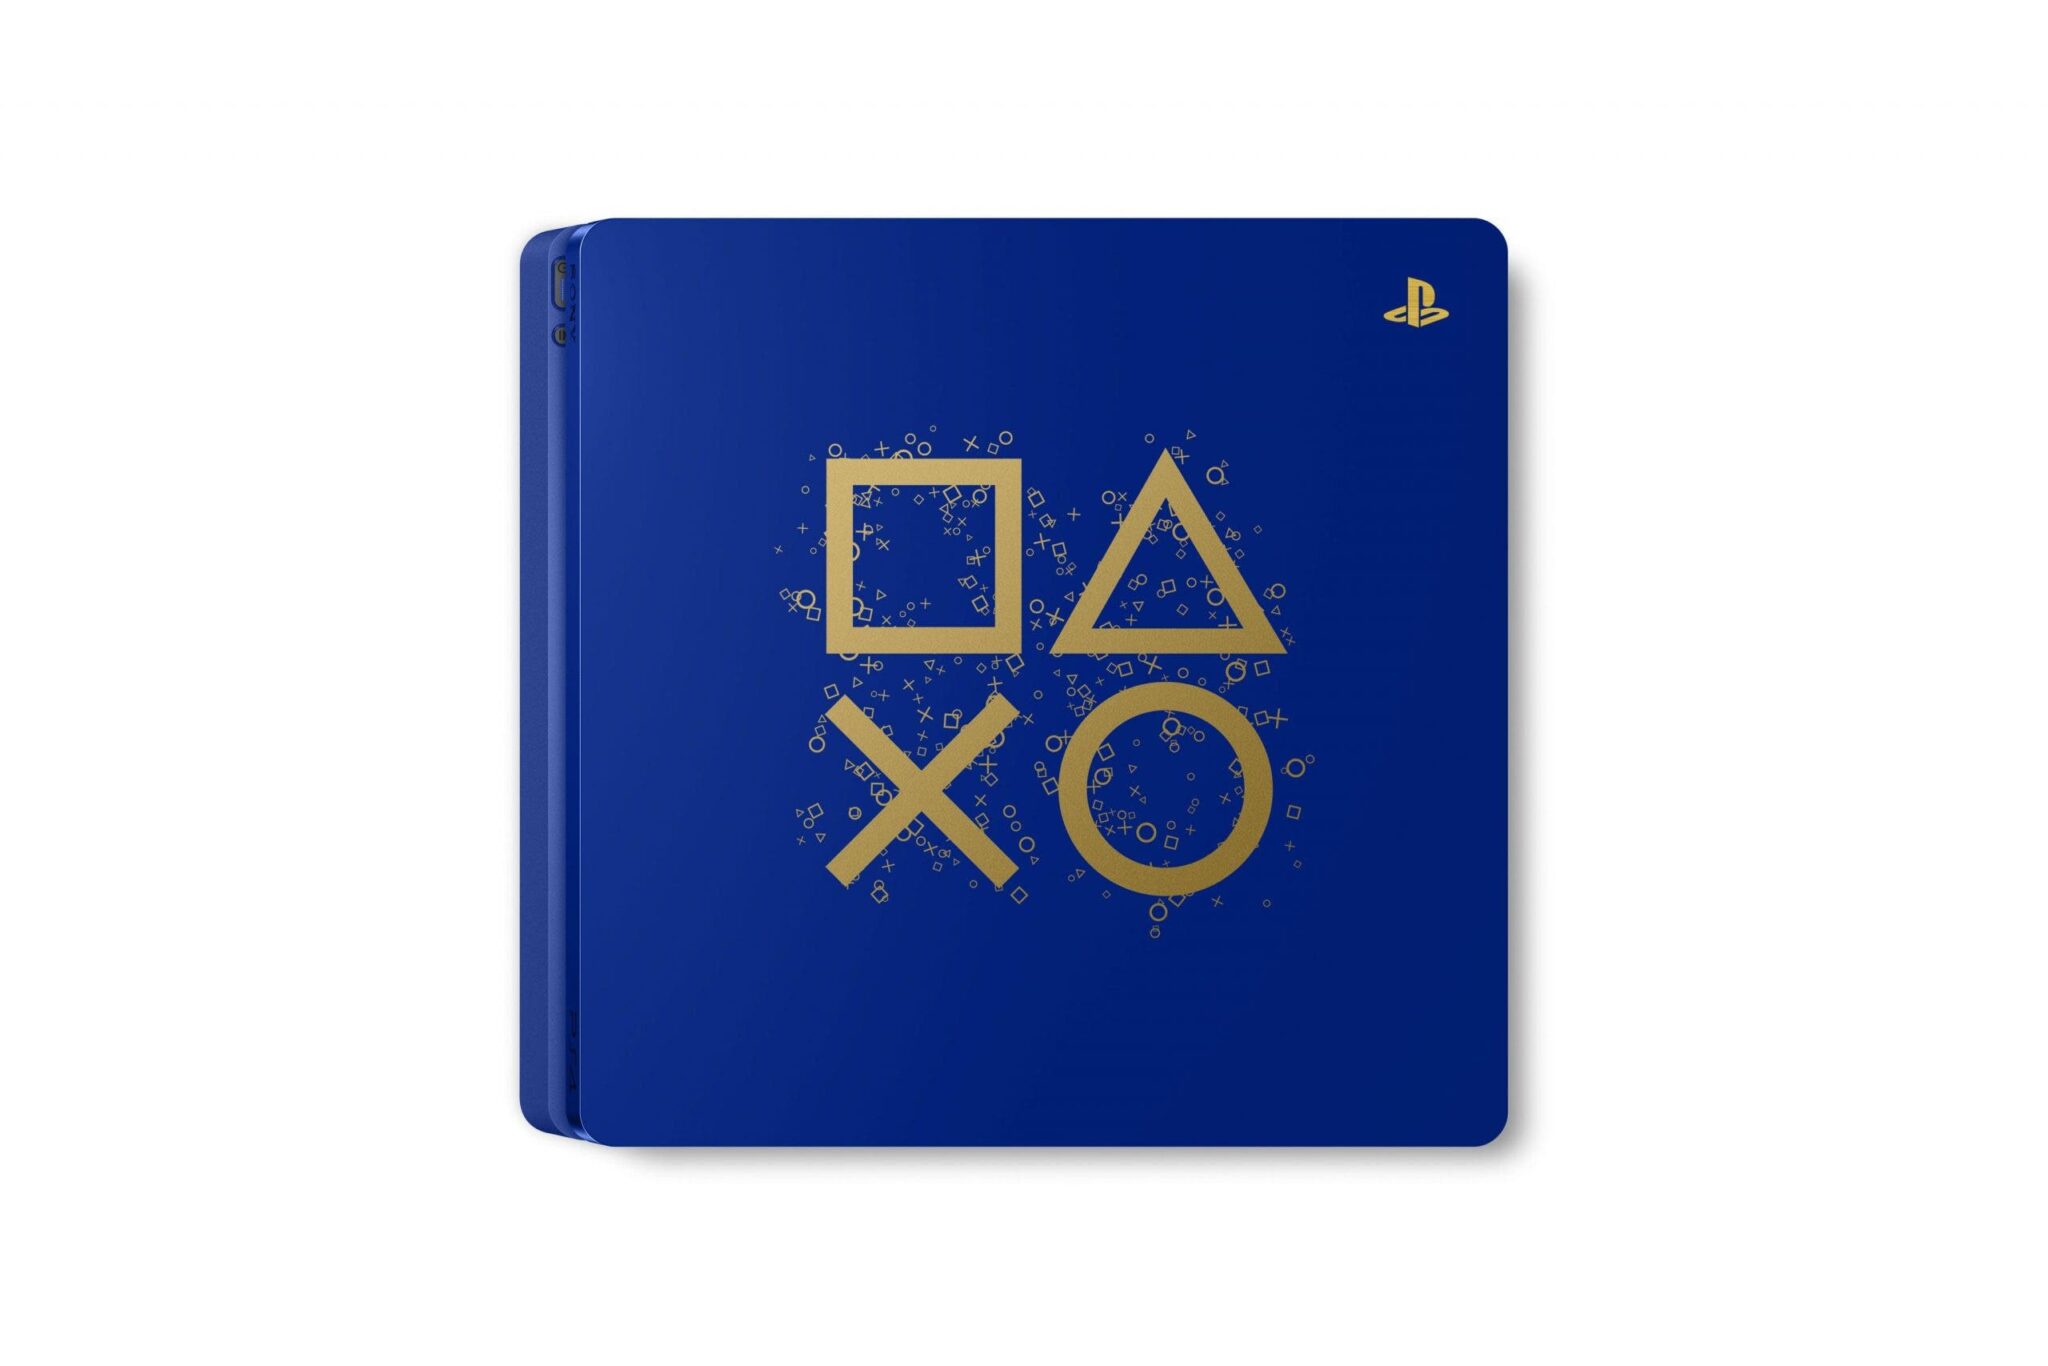 PS4 spécial Days of Play : une édition limitée lancée et de nombreuses réductions en vue